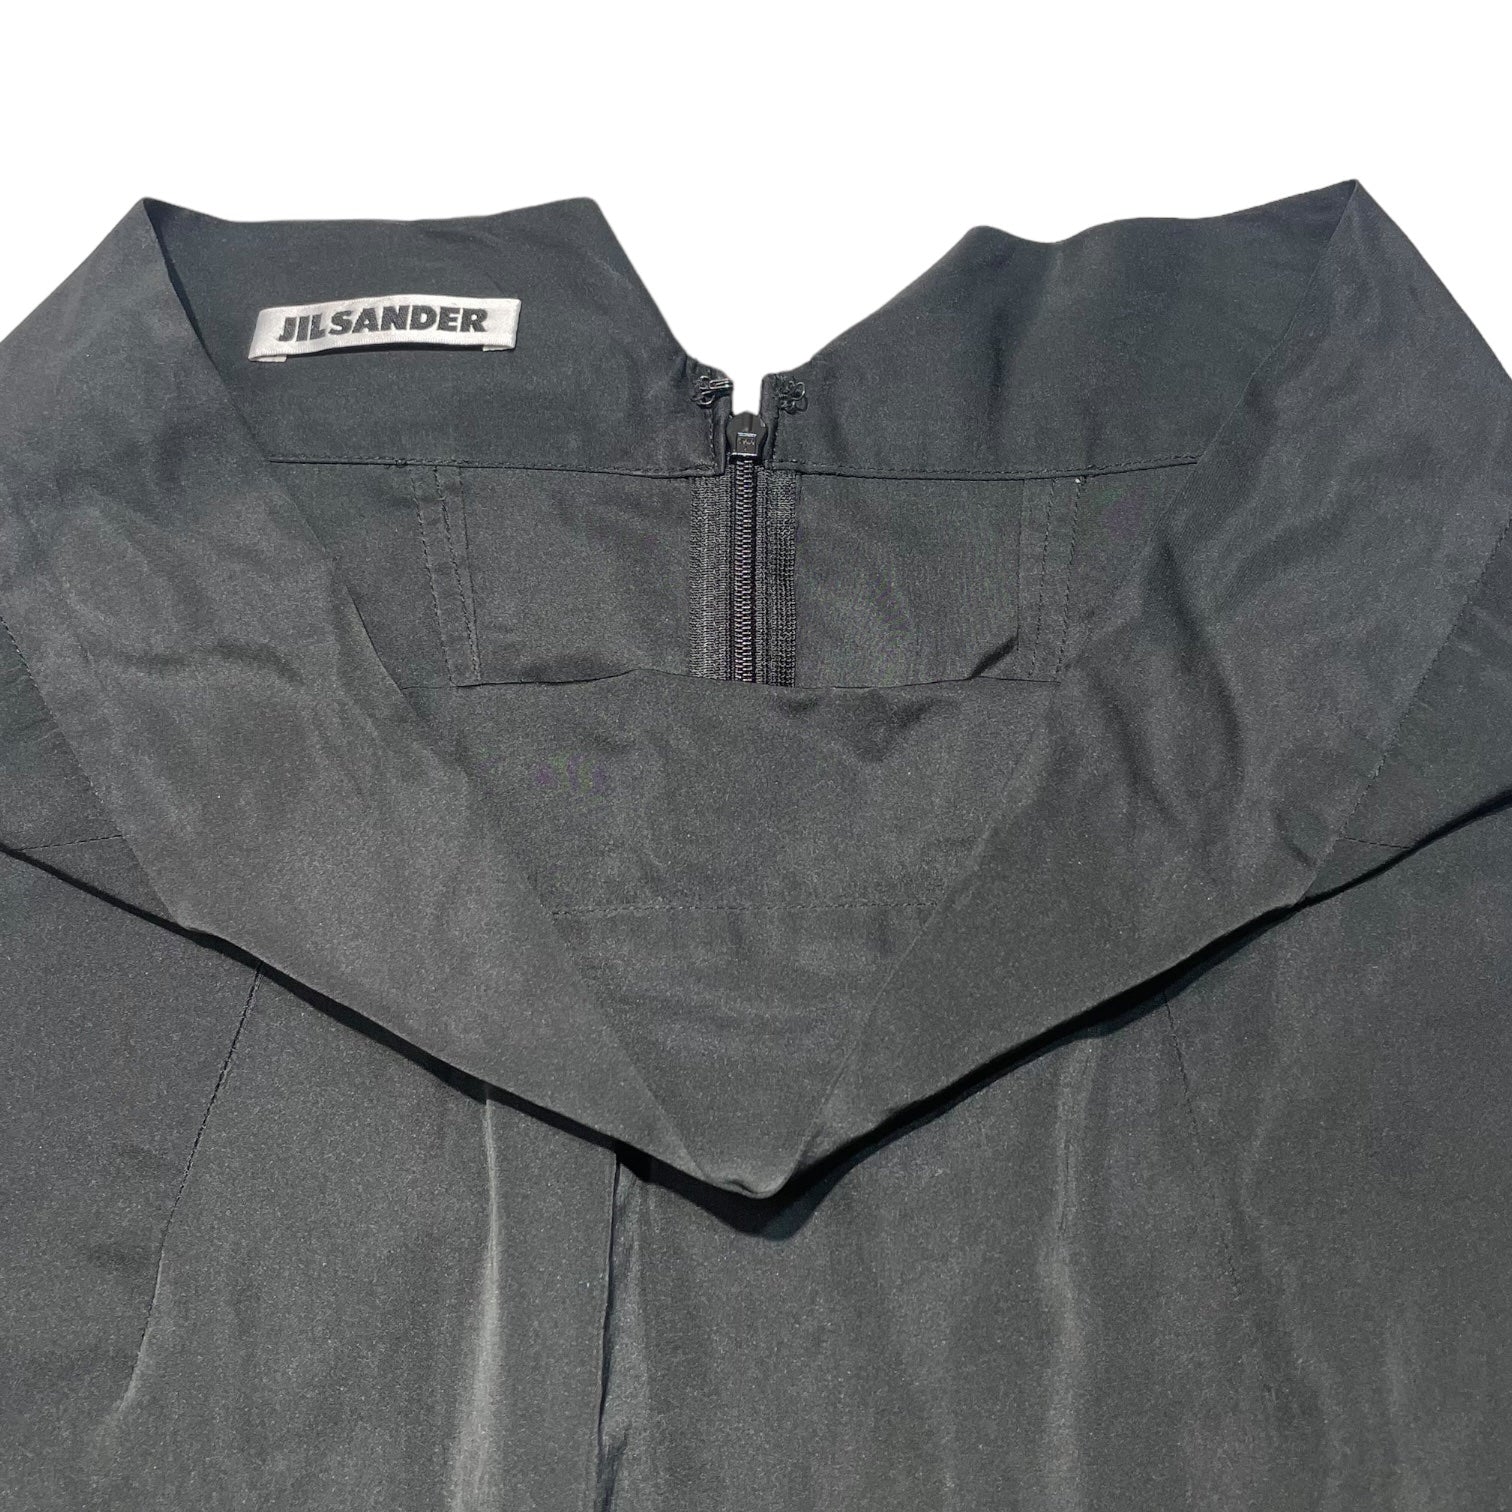 JIL SANDER(ジルサンダー) maxi skirt マキシ スカート 36(S程度) ブラック ロング リボン ポケット